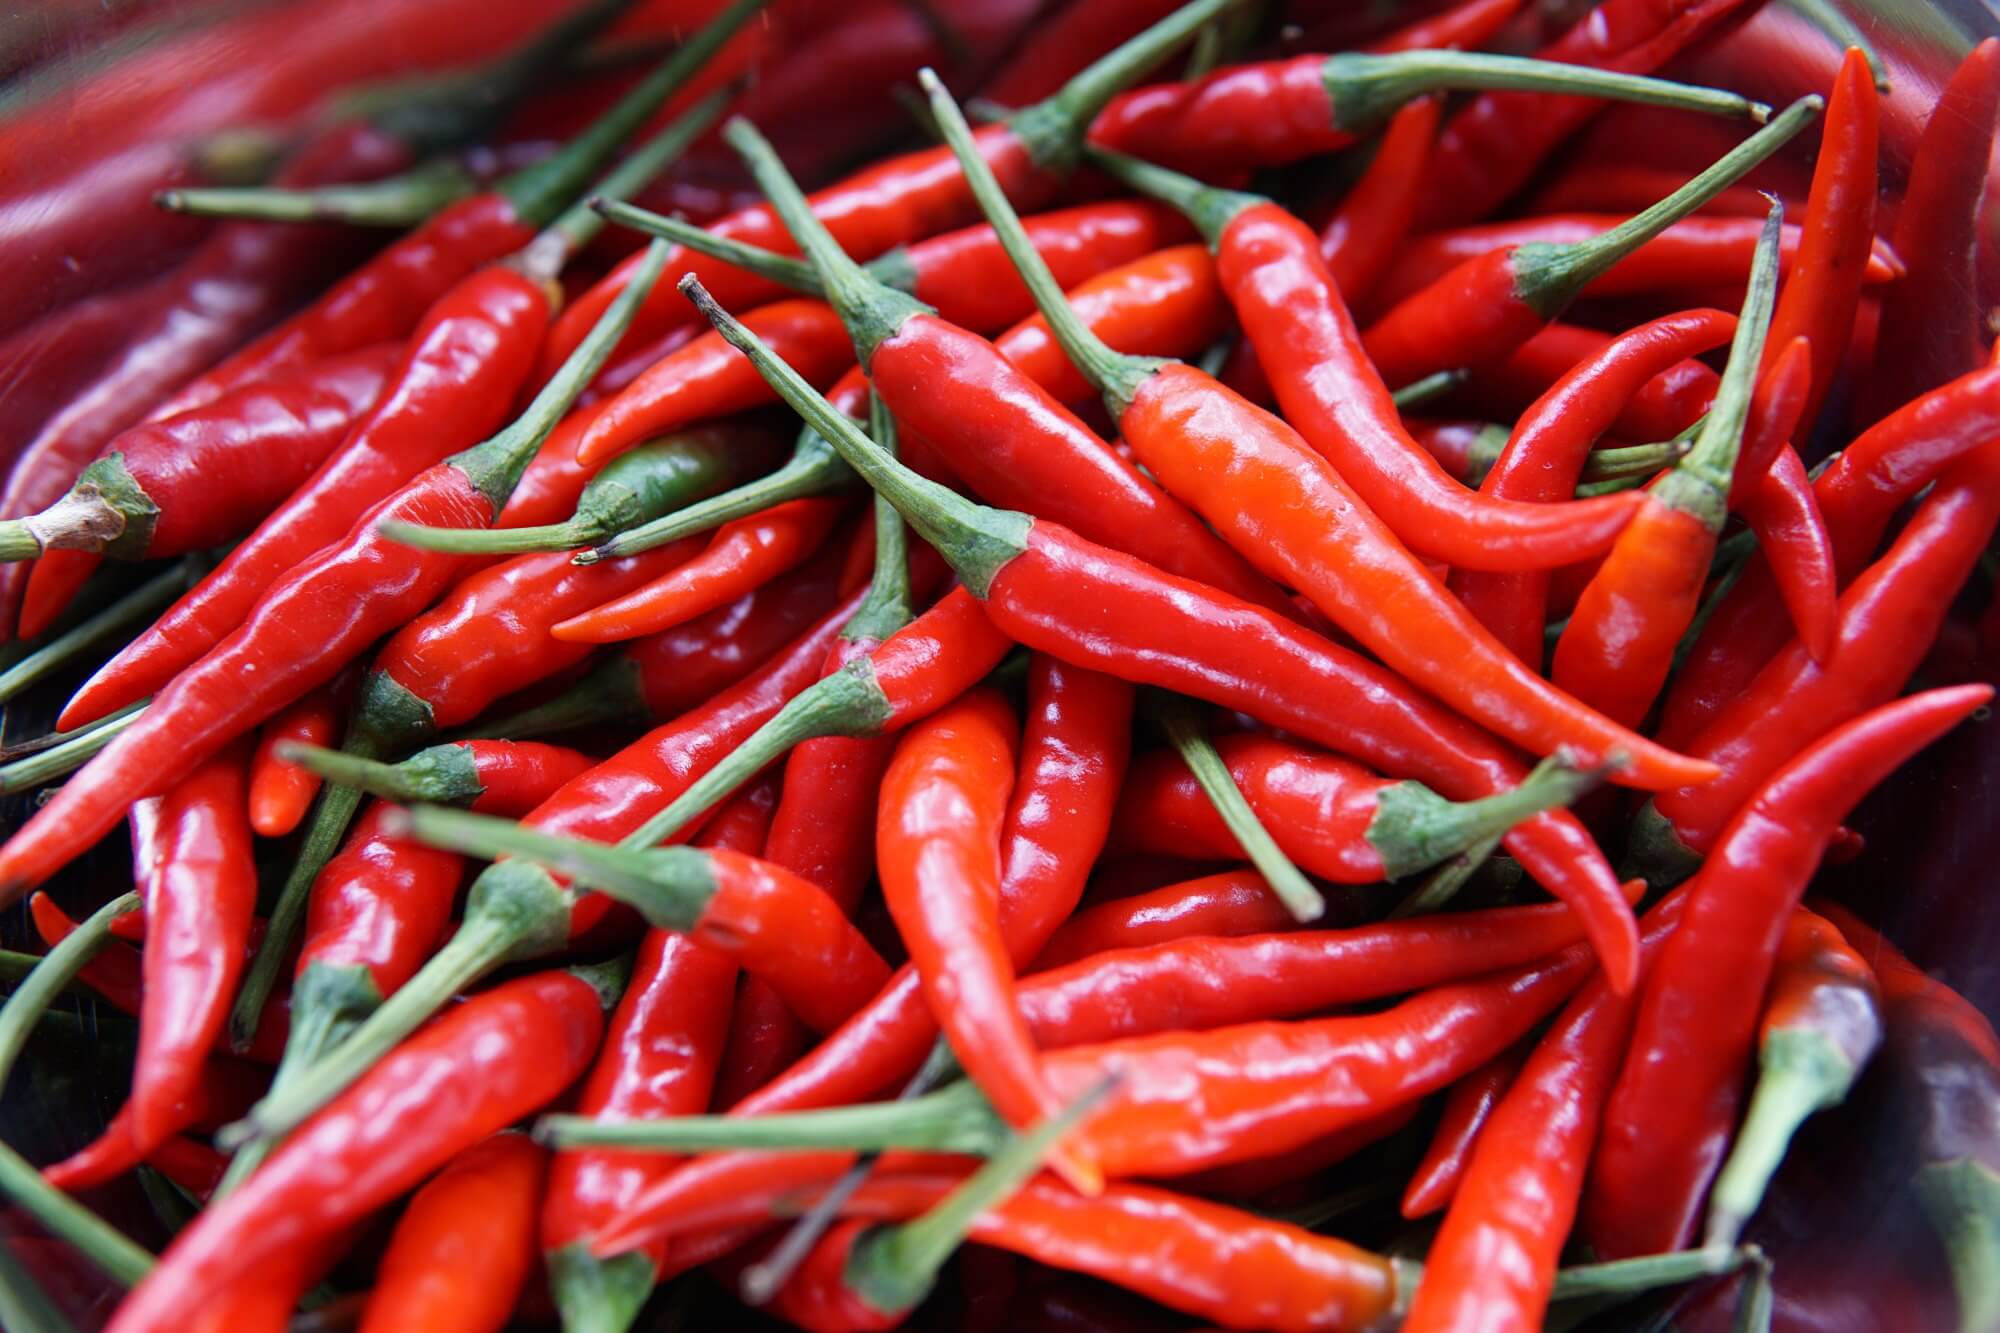 Från vilka sjukdomar kan spara regelbunden konsumtion av chili?